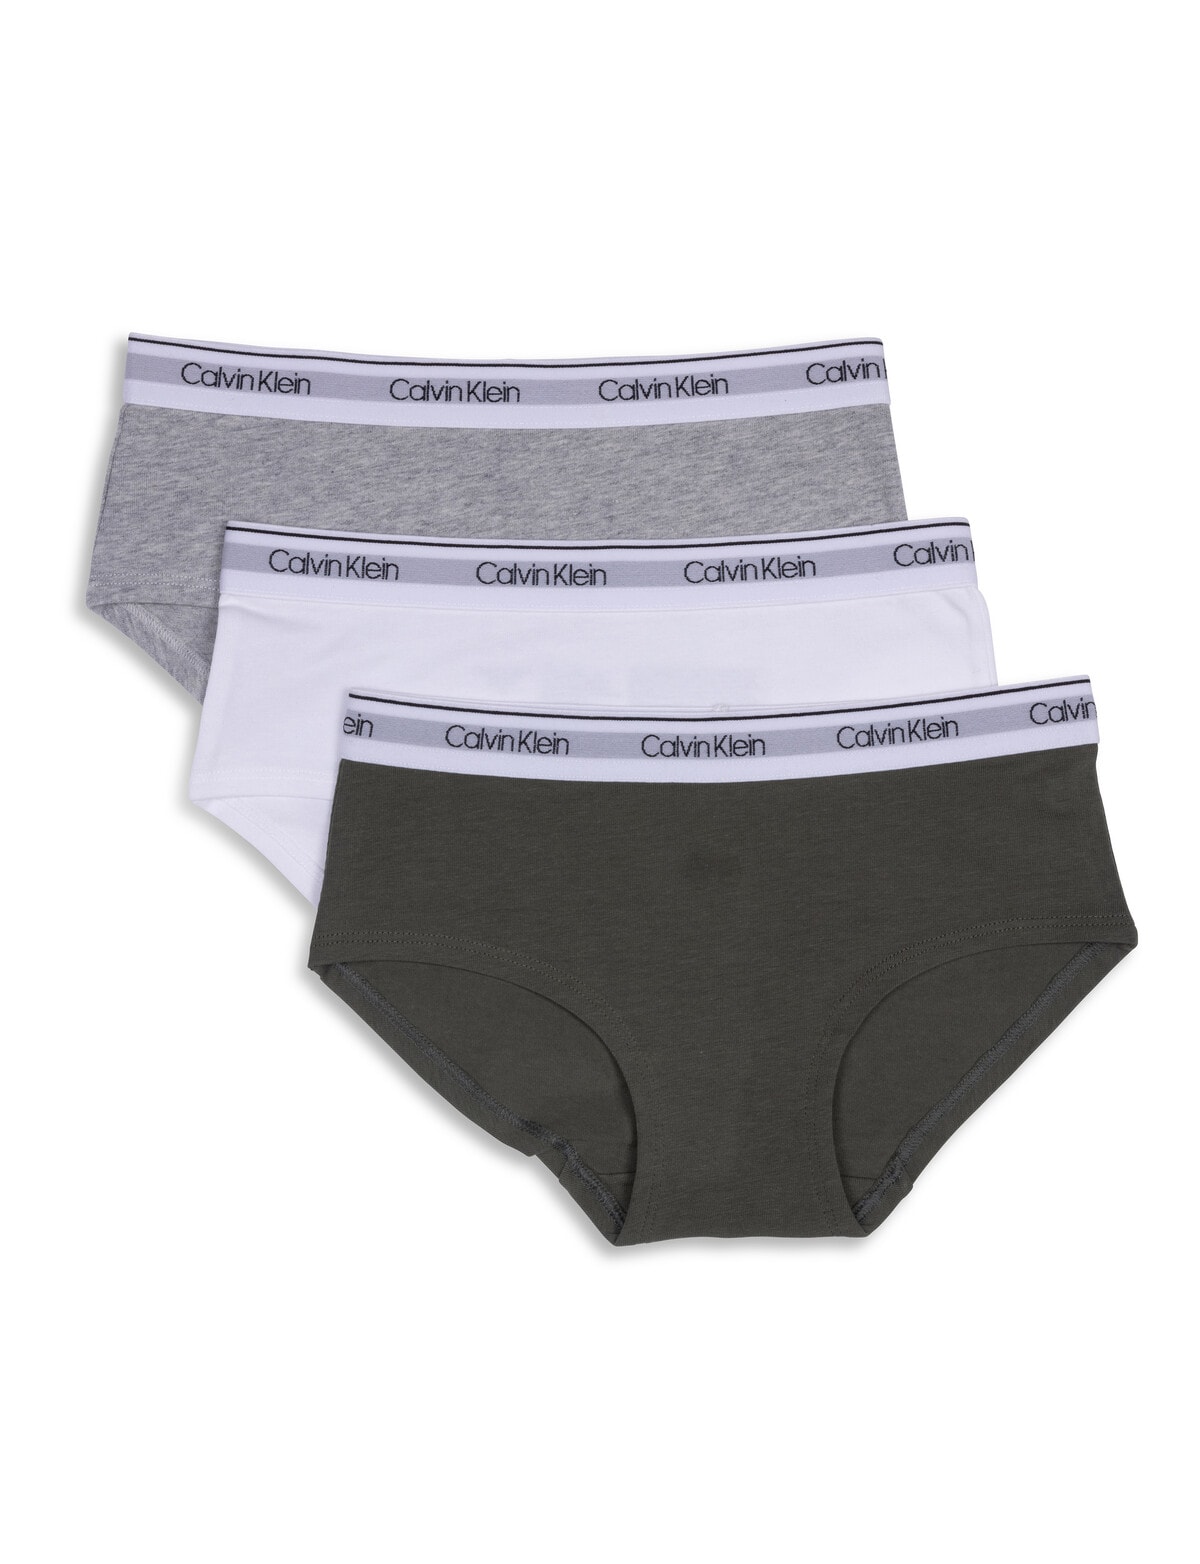 Calvin Klein Hipster Brief, 3-Pack, Thyme, White & Grey, S-XL - Underwear